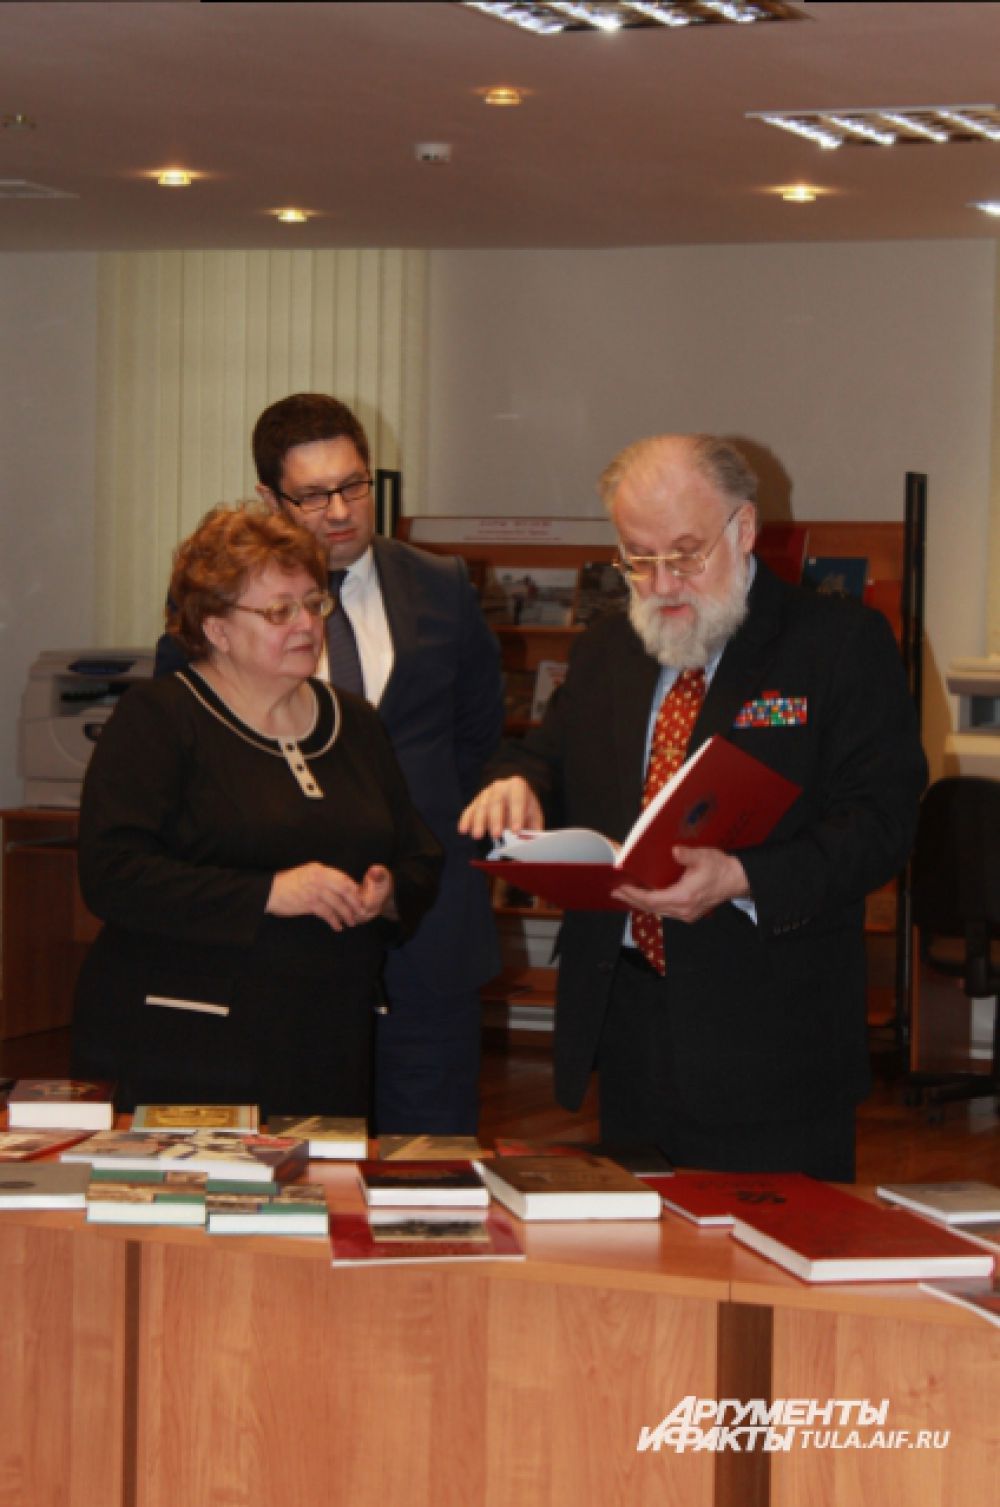 Многие книги, подаренные Чуровым, подписаны лиьо авторами книг, либо героями этих книг.